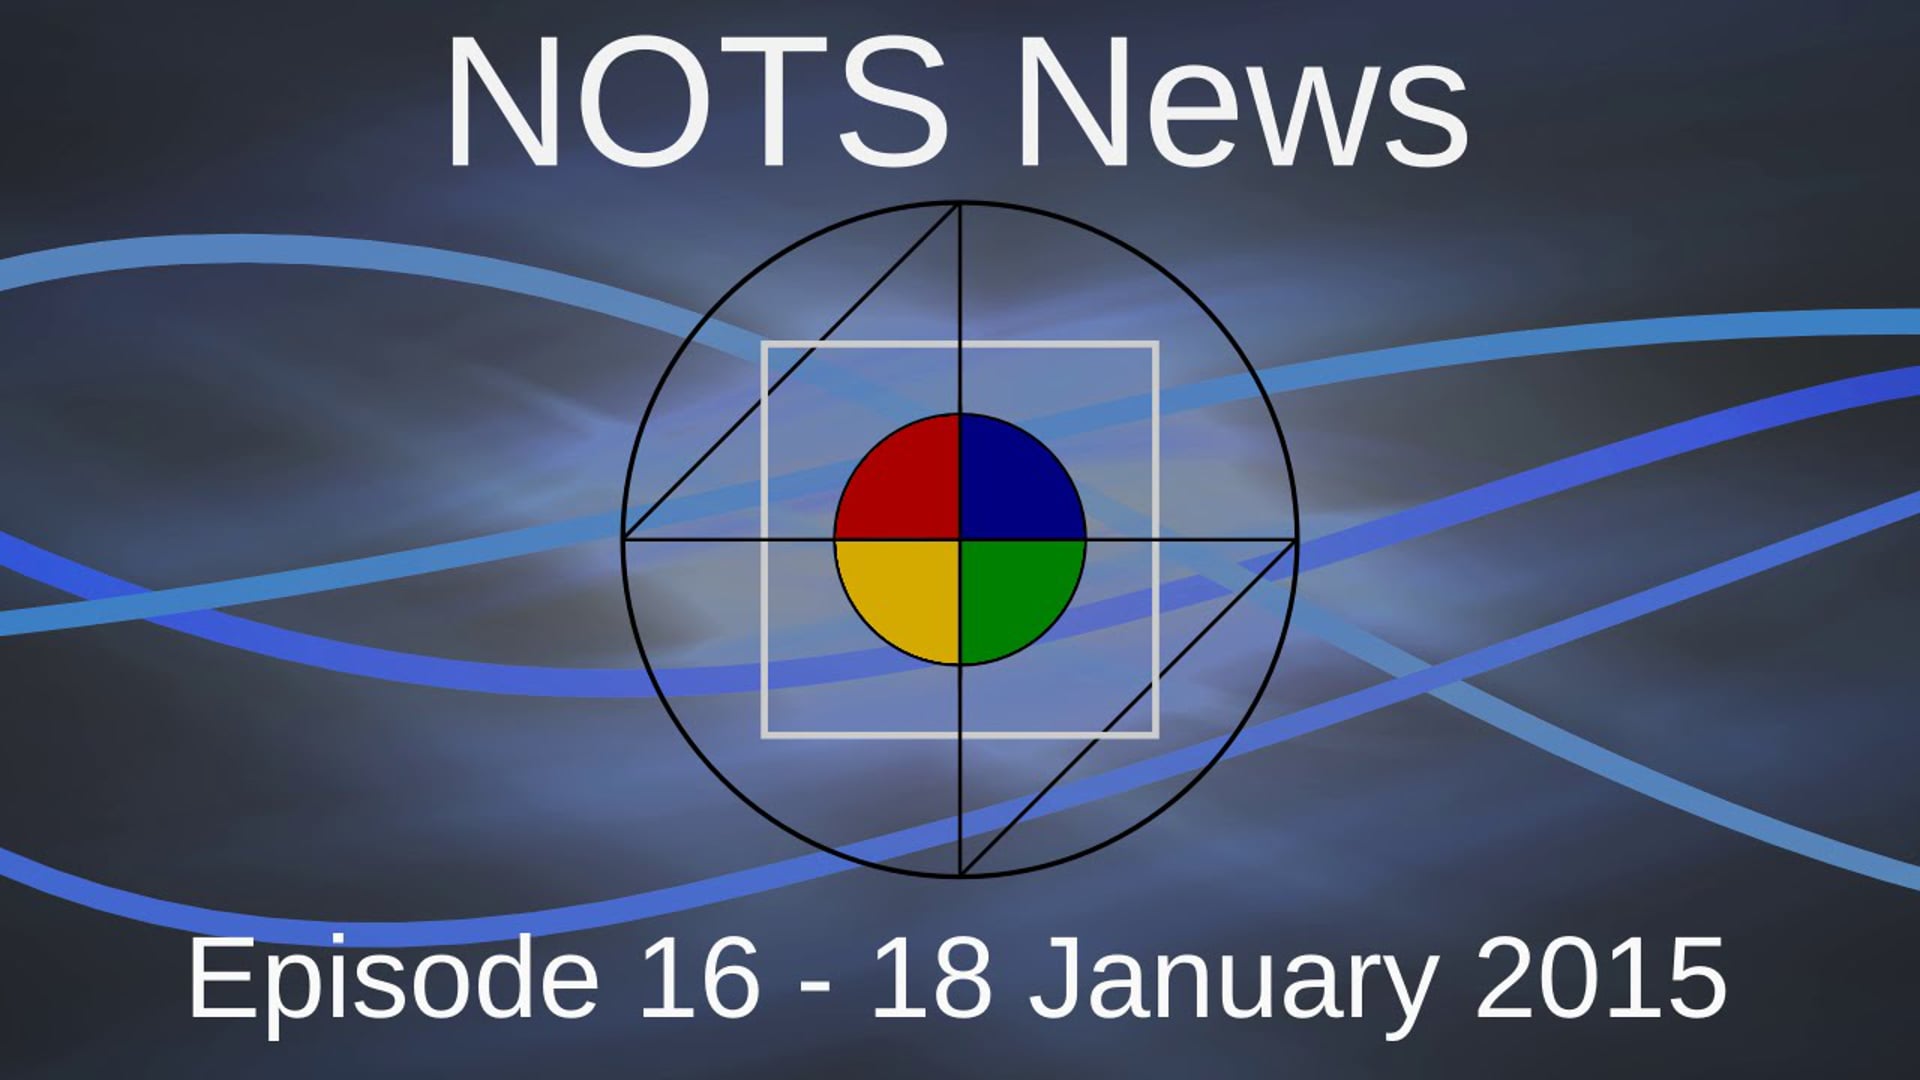 18 January 2015 - NOTS News